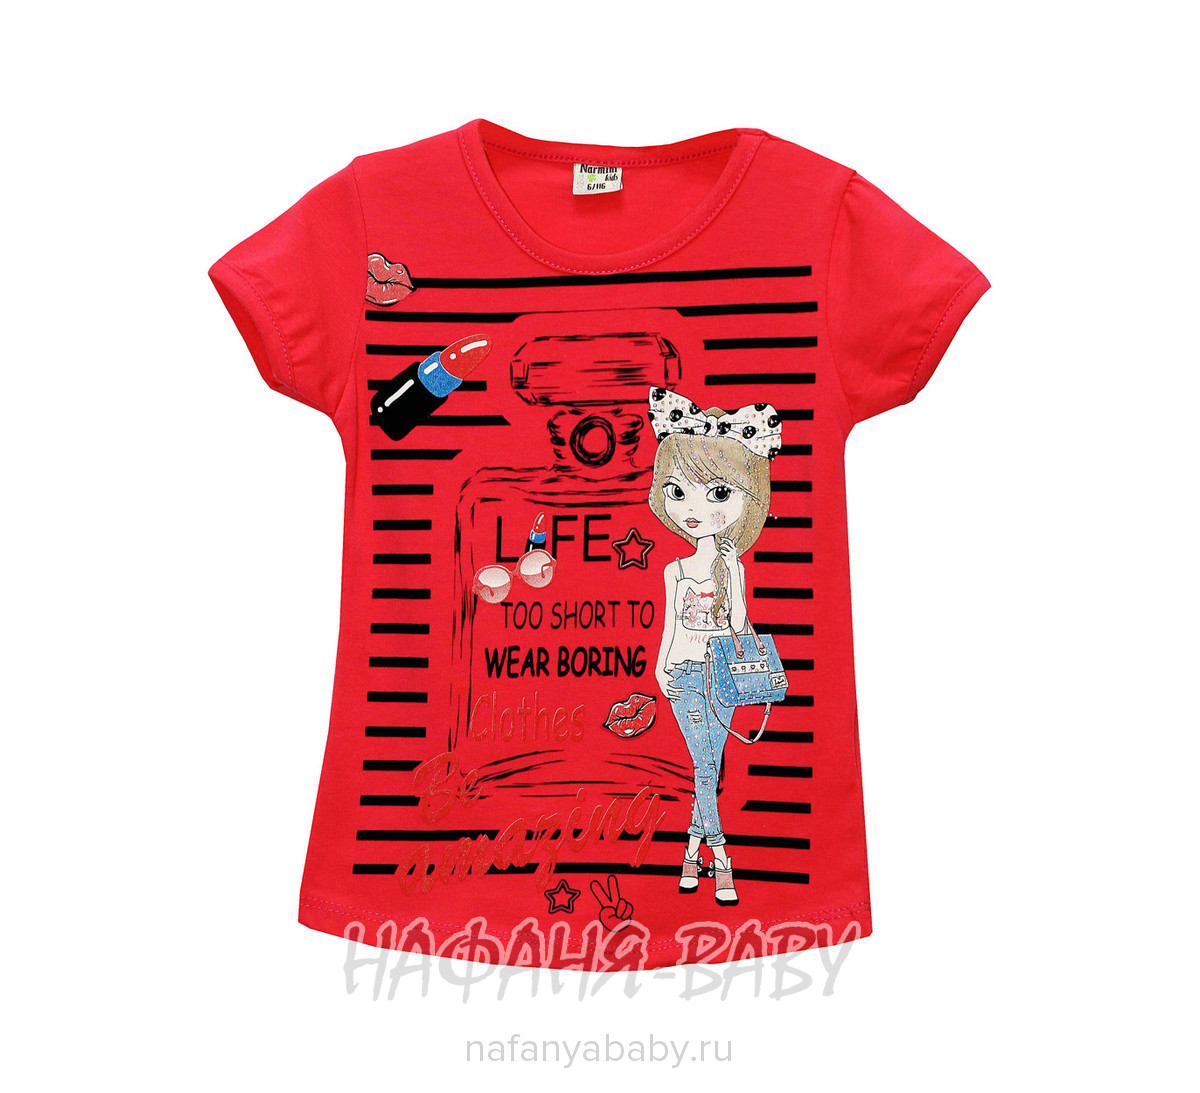 Детская футболка NARMINI арт: 4678, 1-4 года, 5-9 лет, цвет малиновый, оптом Турция